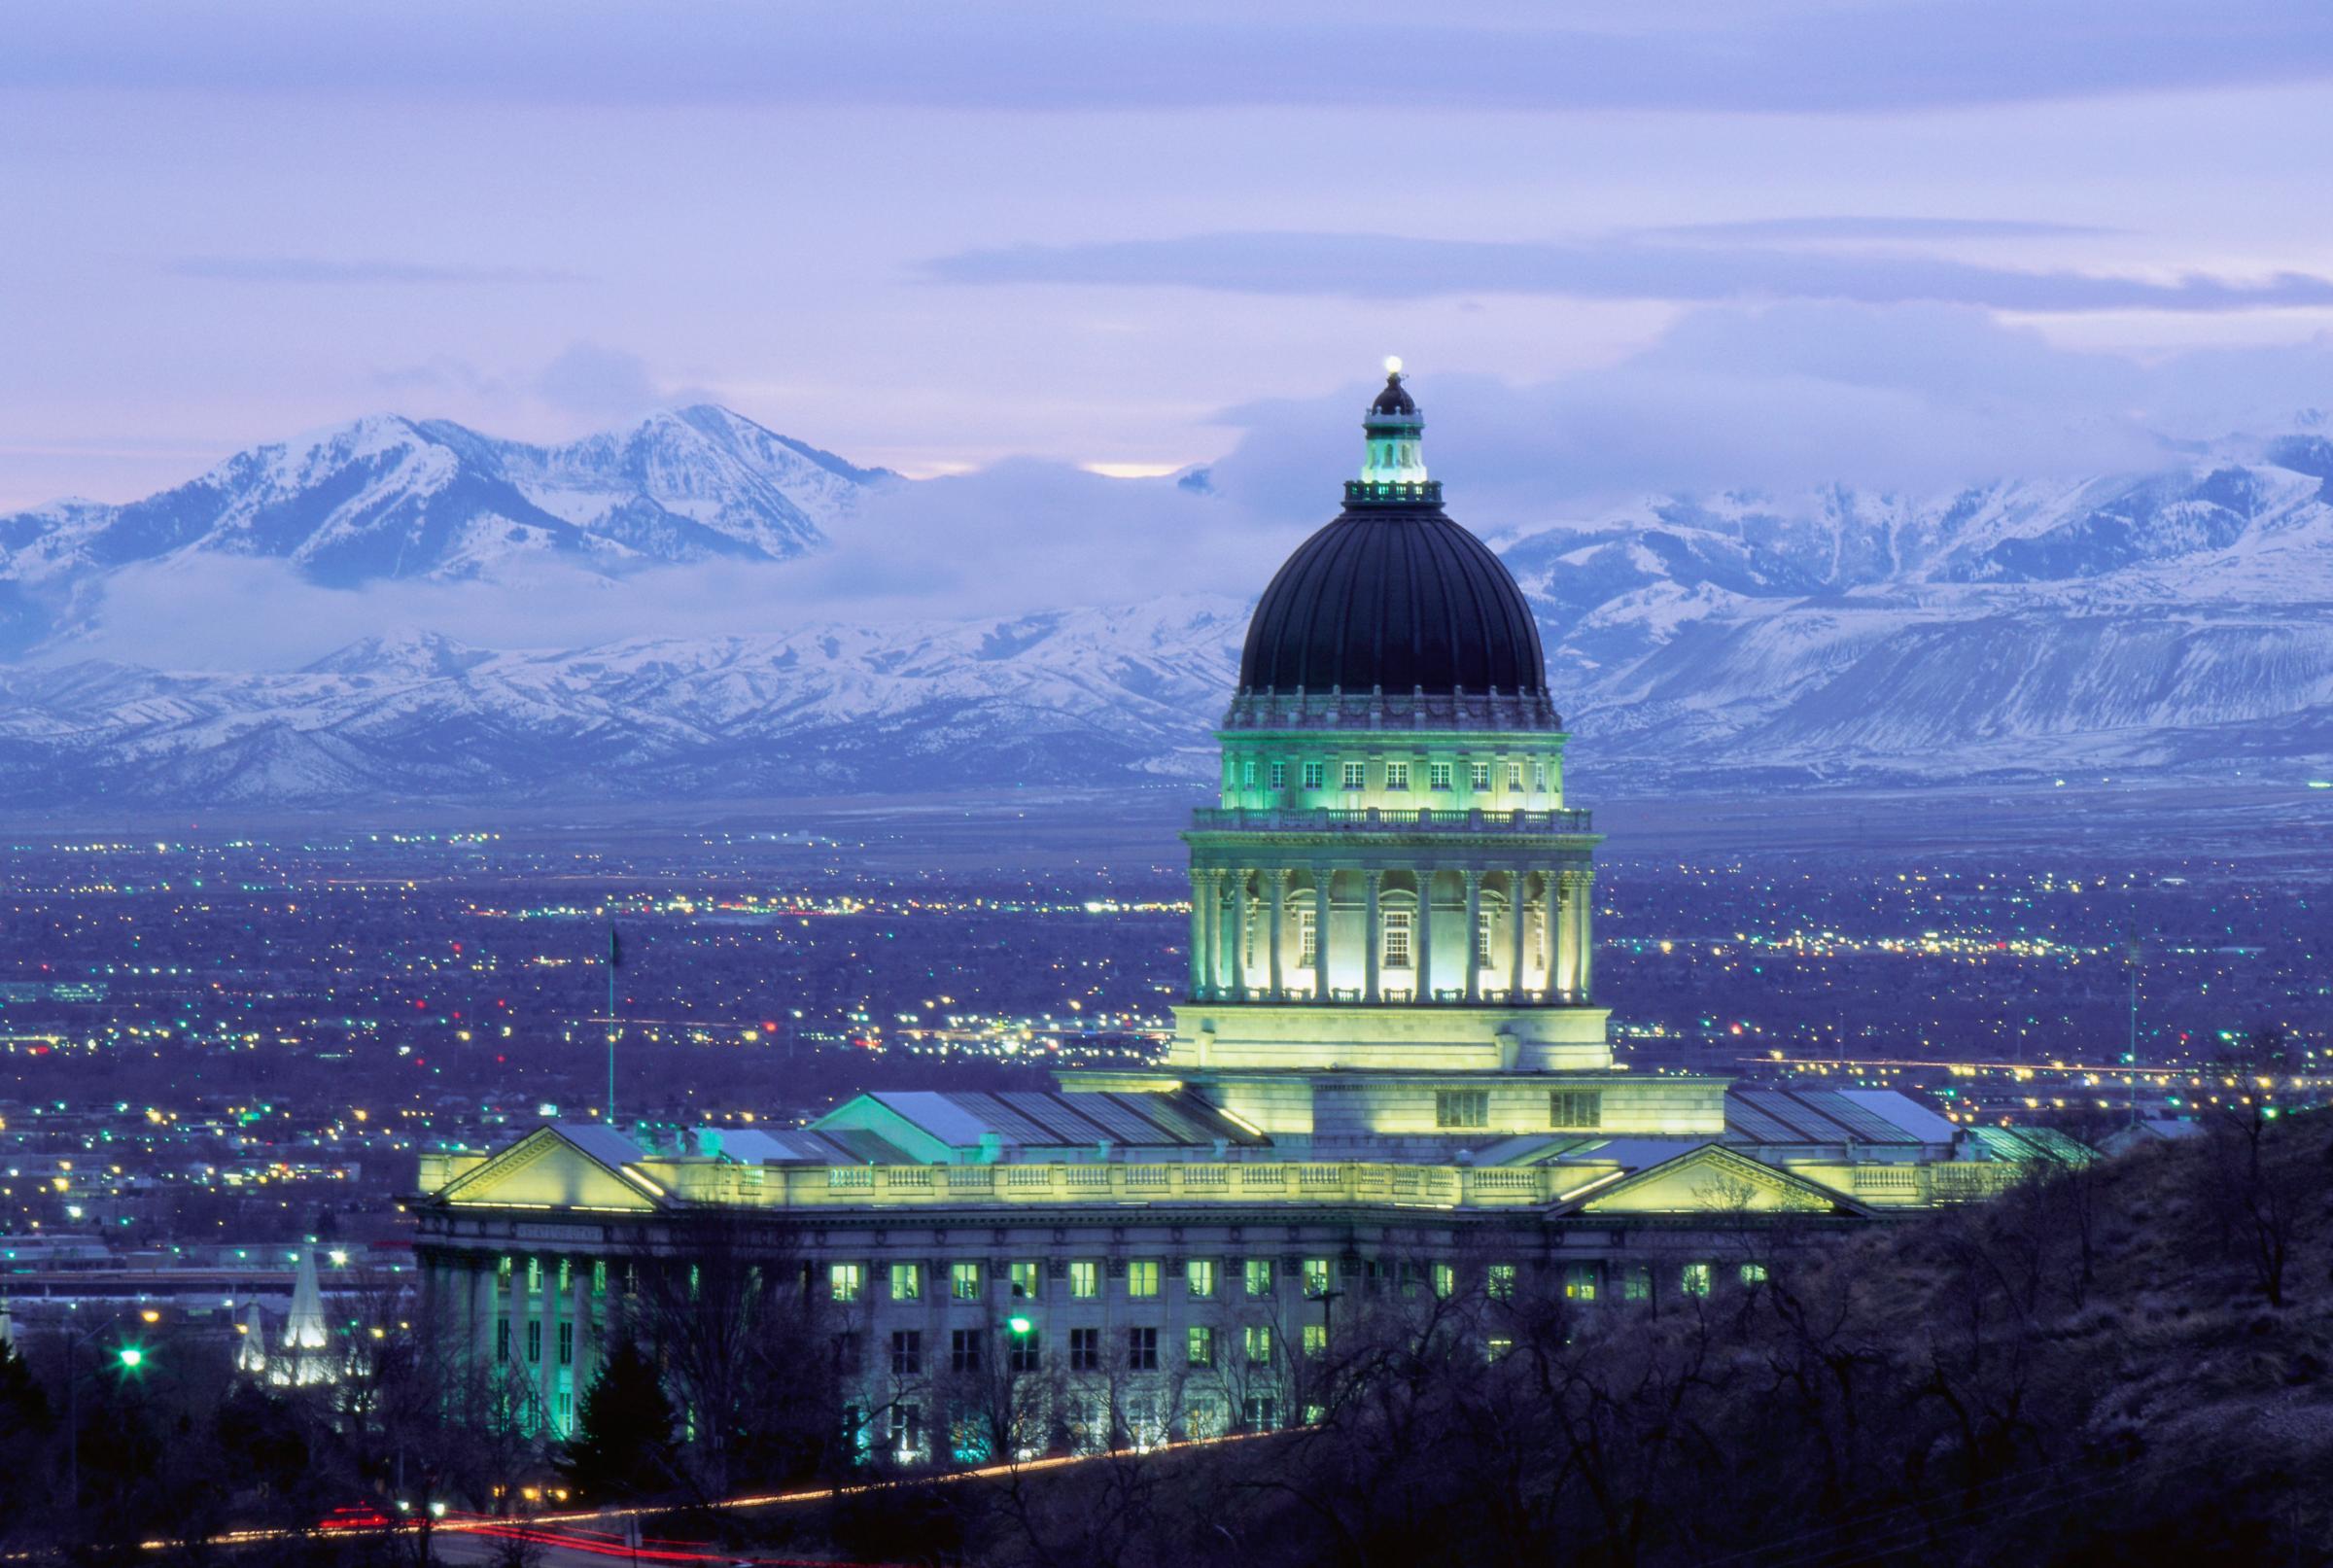 Utah State Capitol Building at Sunset